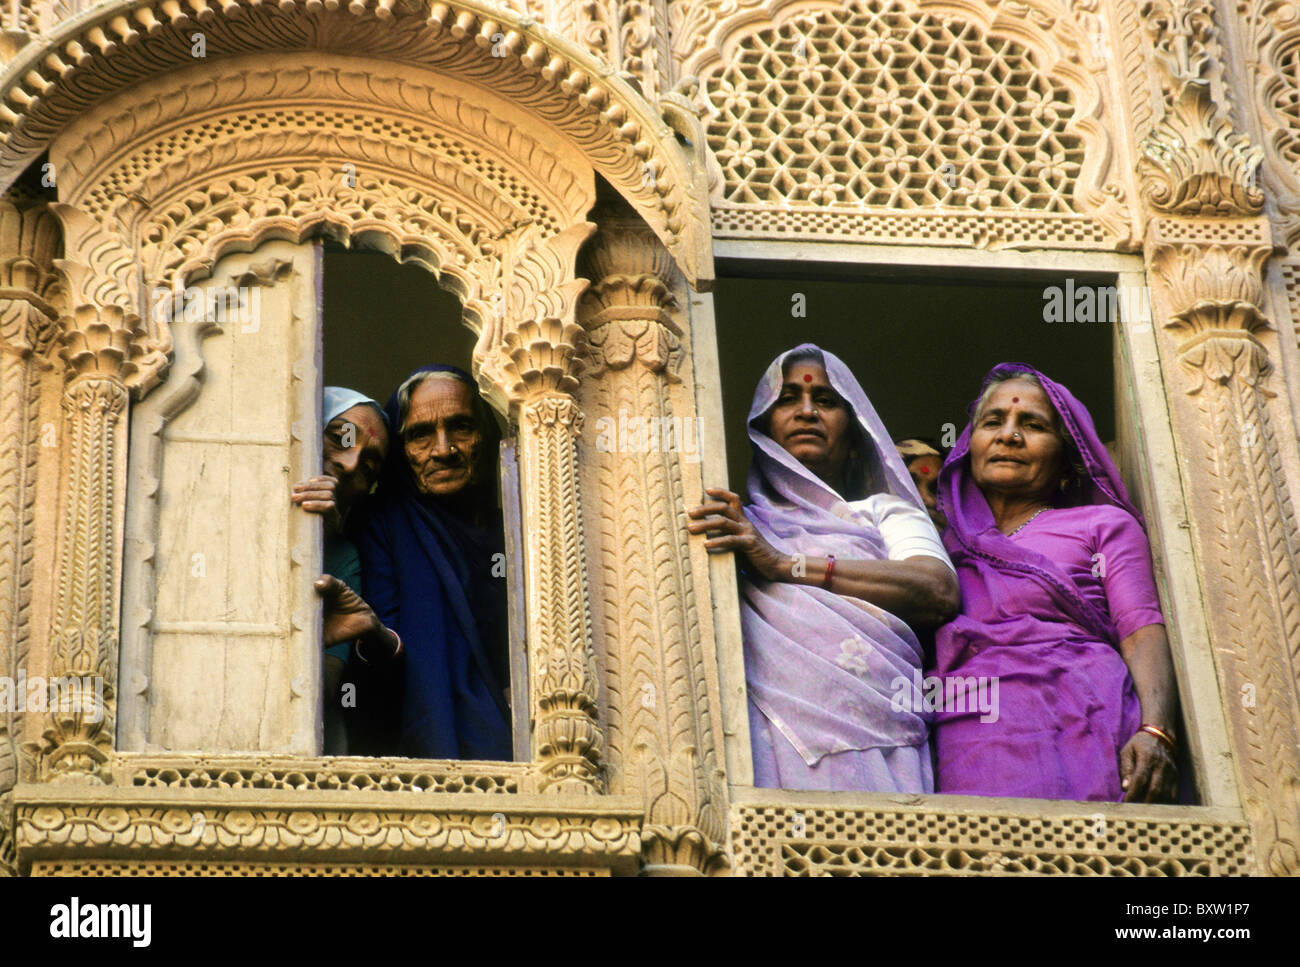 Les femmes dans l'intérieur du palais Meherangarh Fort, Jodhpur, Rajasthan, India Banque D'Images